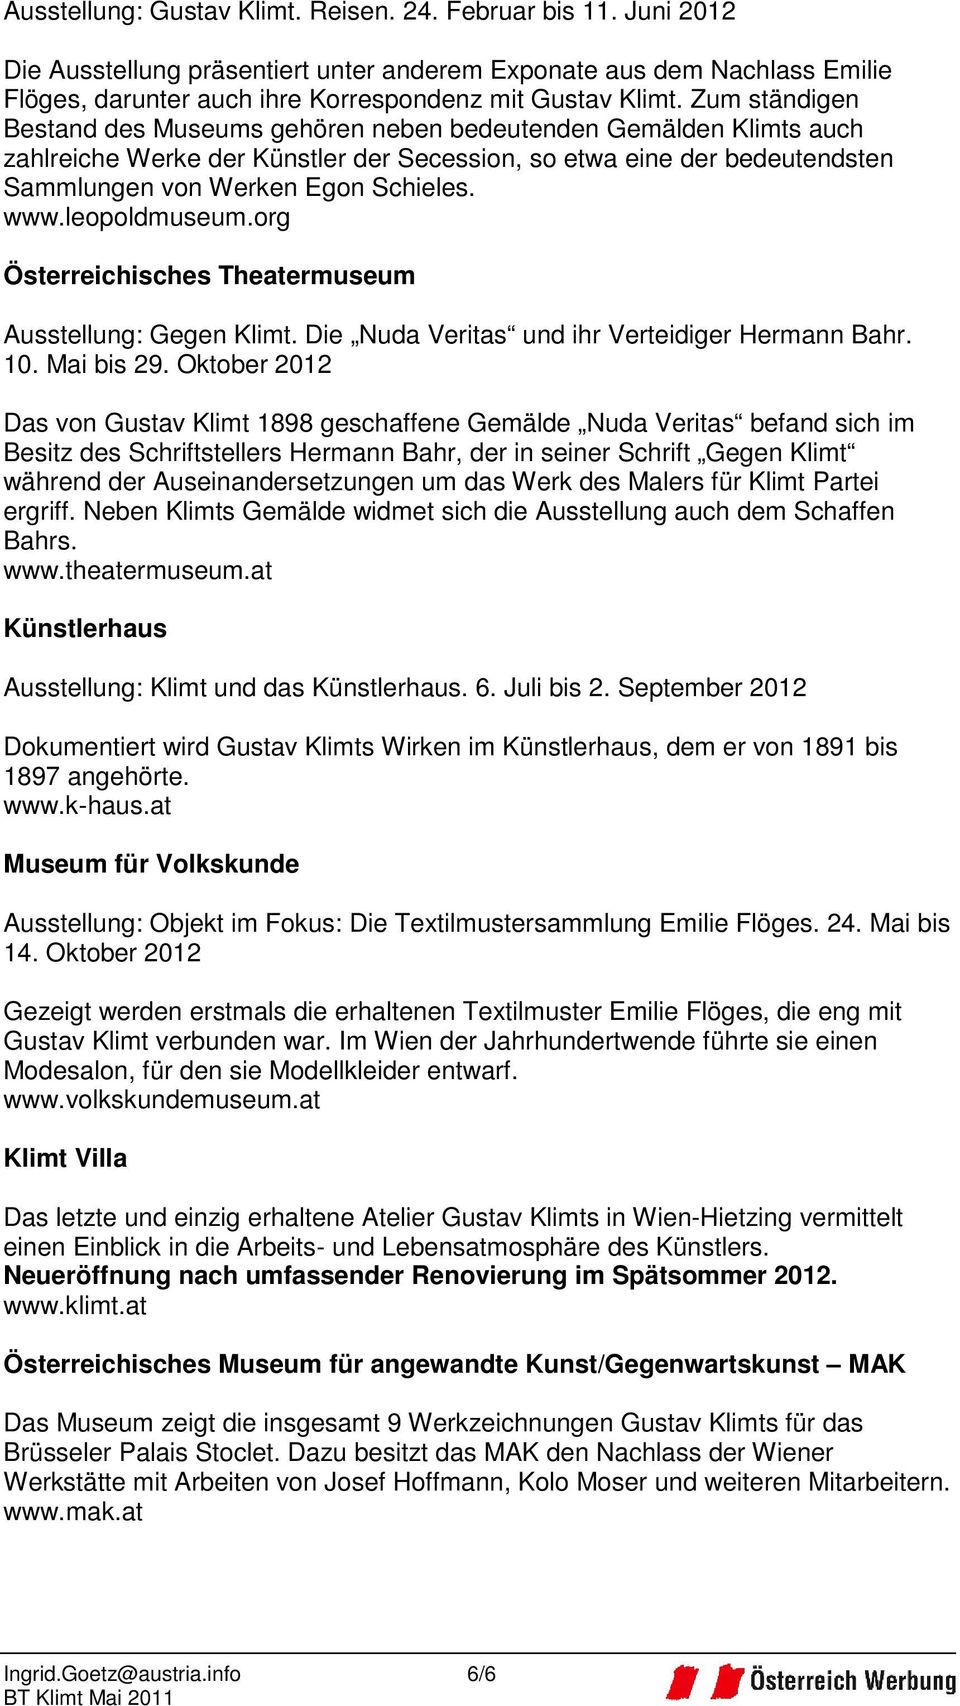 leopoldmuseum.org Österreichisches Theatermuseum Ausstellung: Gegen Klimt. Die Nuda Veritas und ihr Verteidiger Hermann Bahr. 10. Mai bis 29.